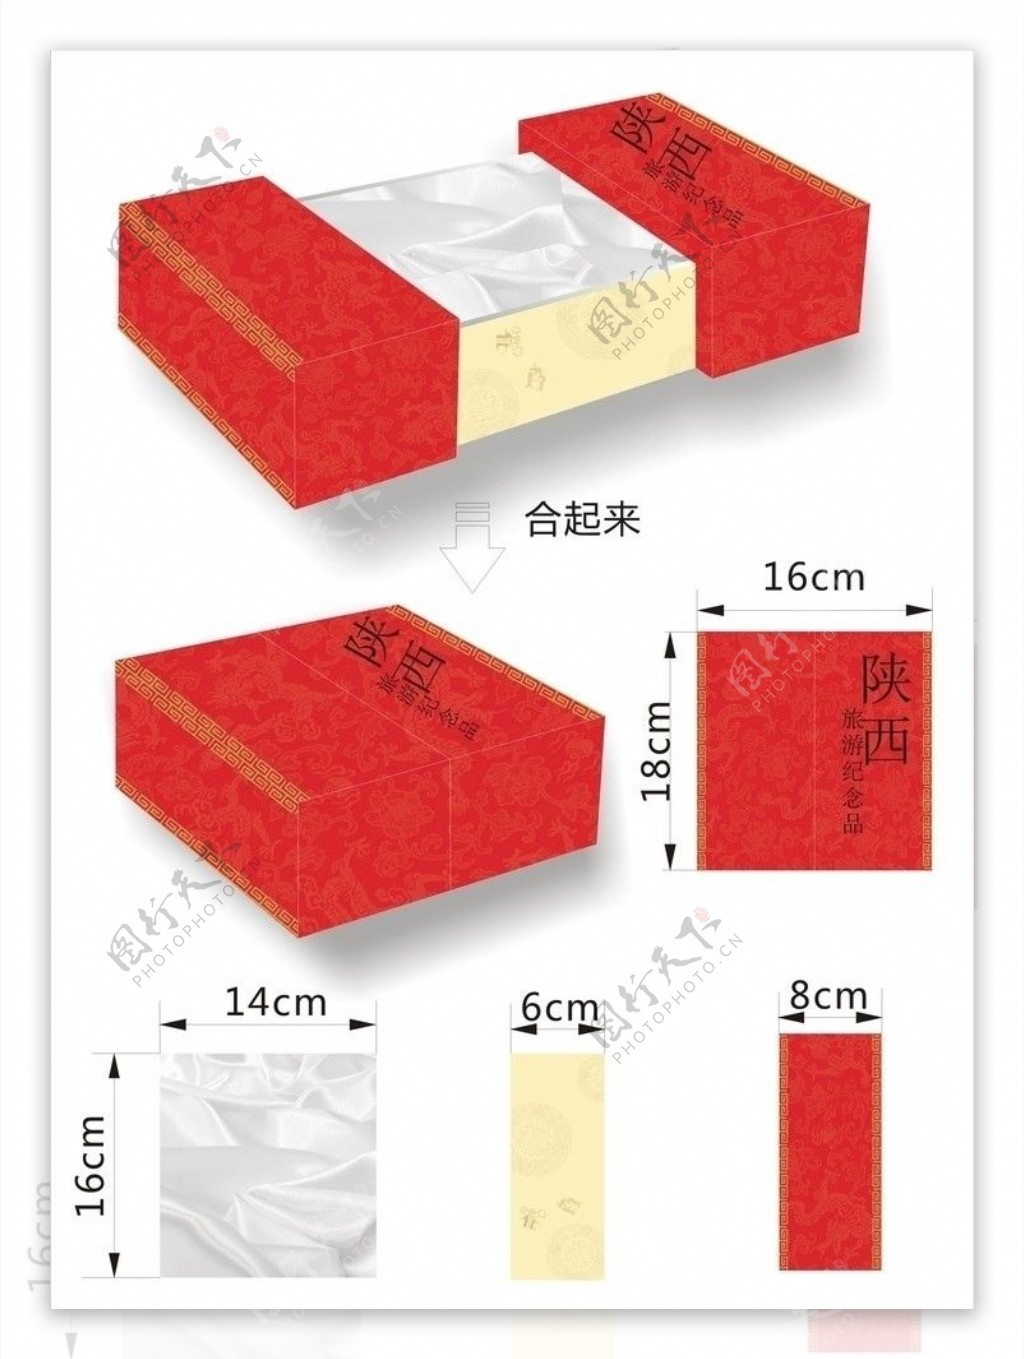 陕西旅游纪念品包装盒设计图片